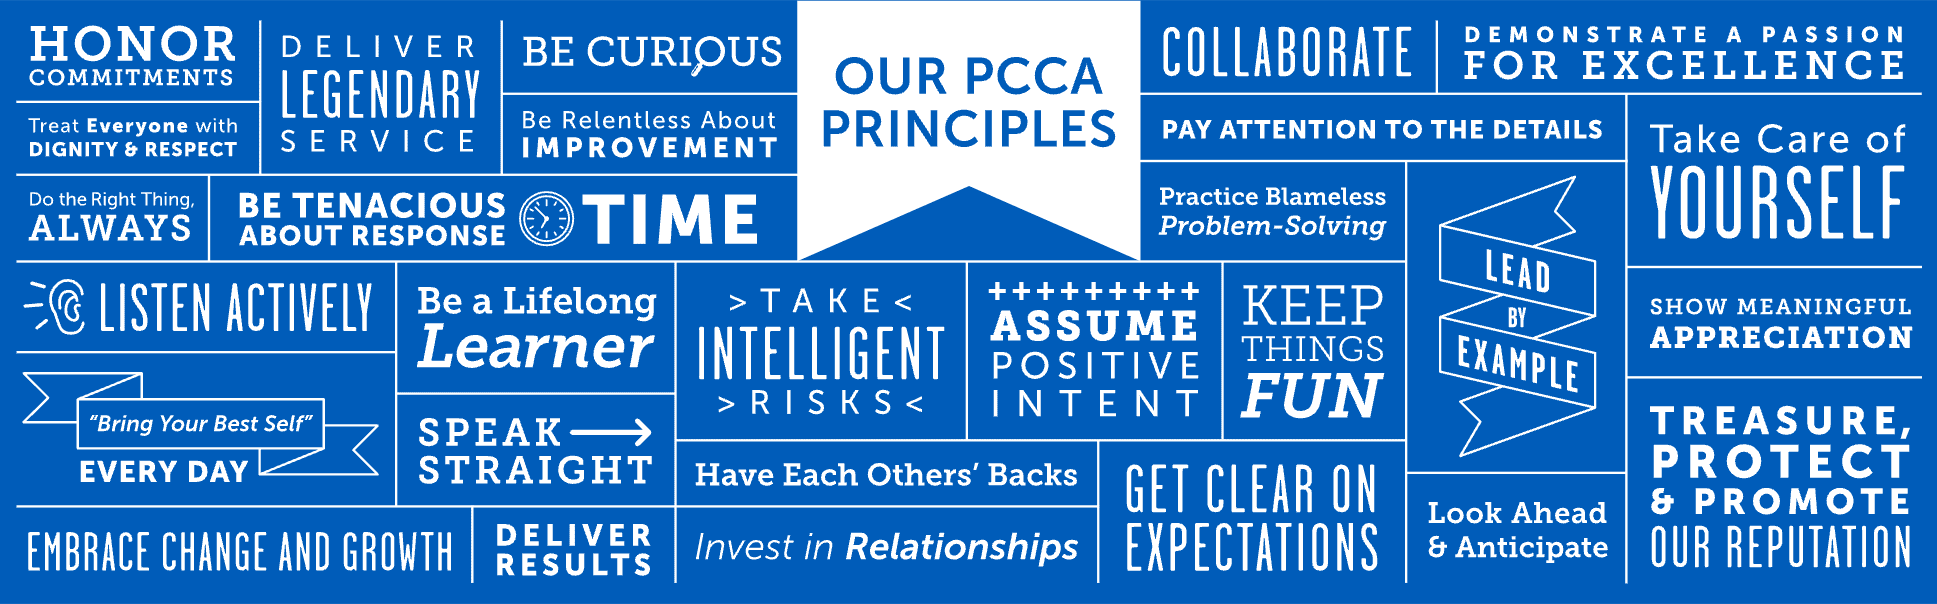 PCCA原则墙